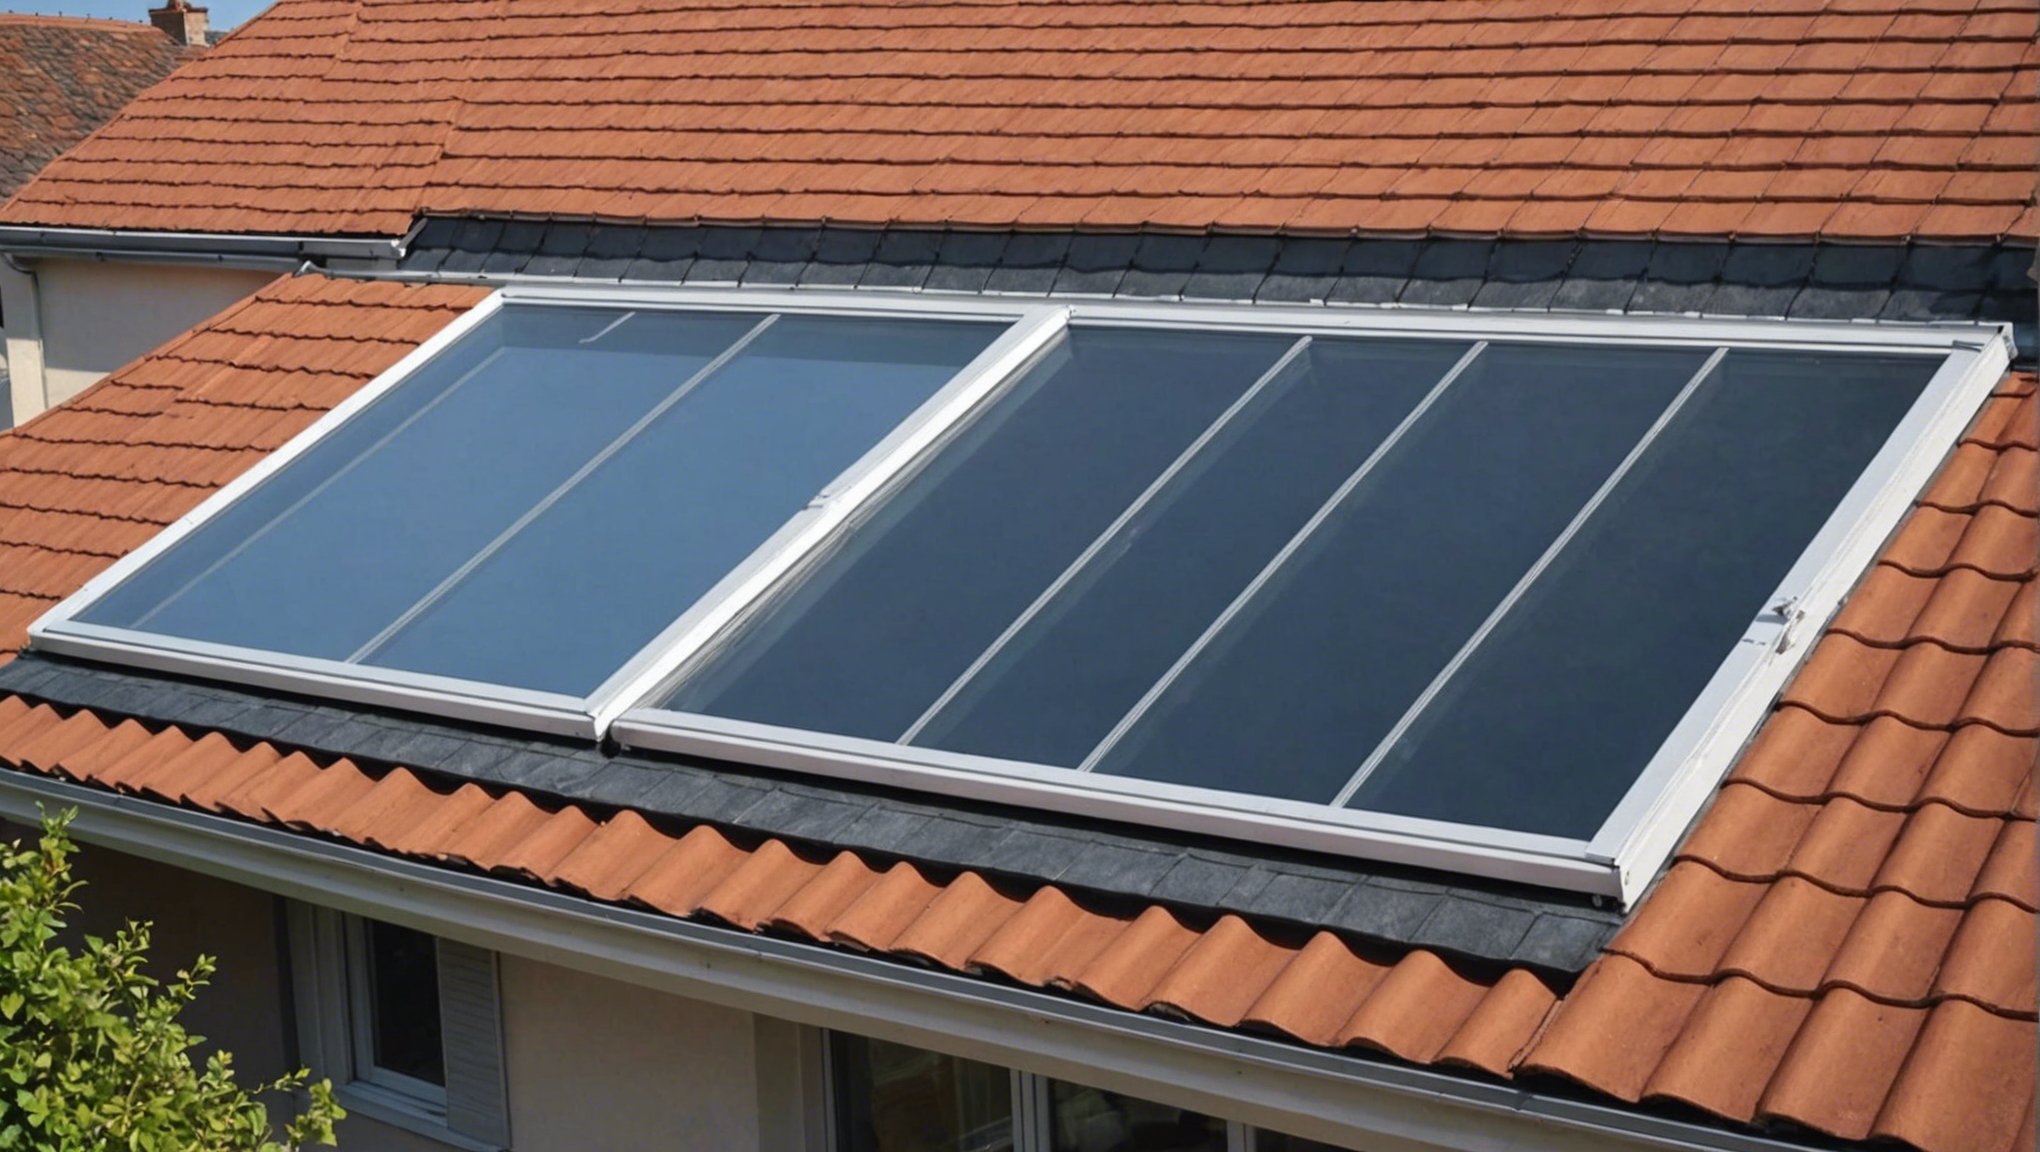 découvrez comment améliorer l'isolation de votre maison avec nos panneaux isolants pour toiture. économisez sur vos factures d'énergie et augmentez le confort de votre maison.